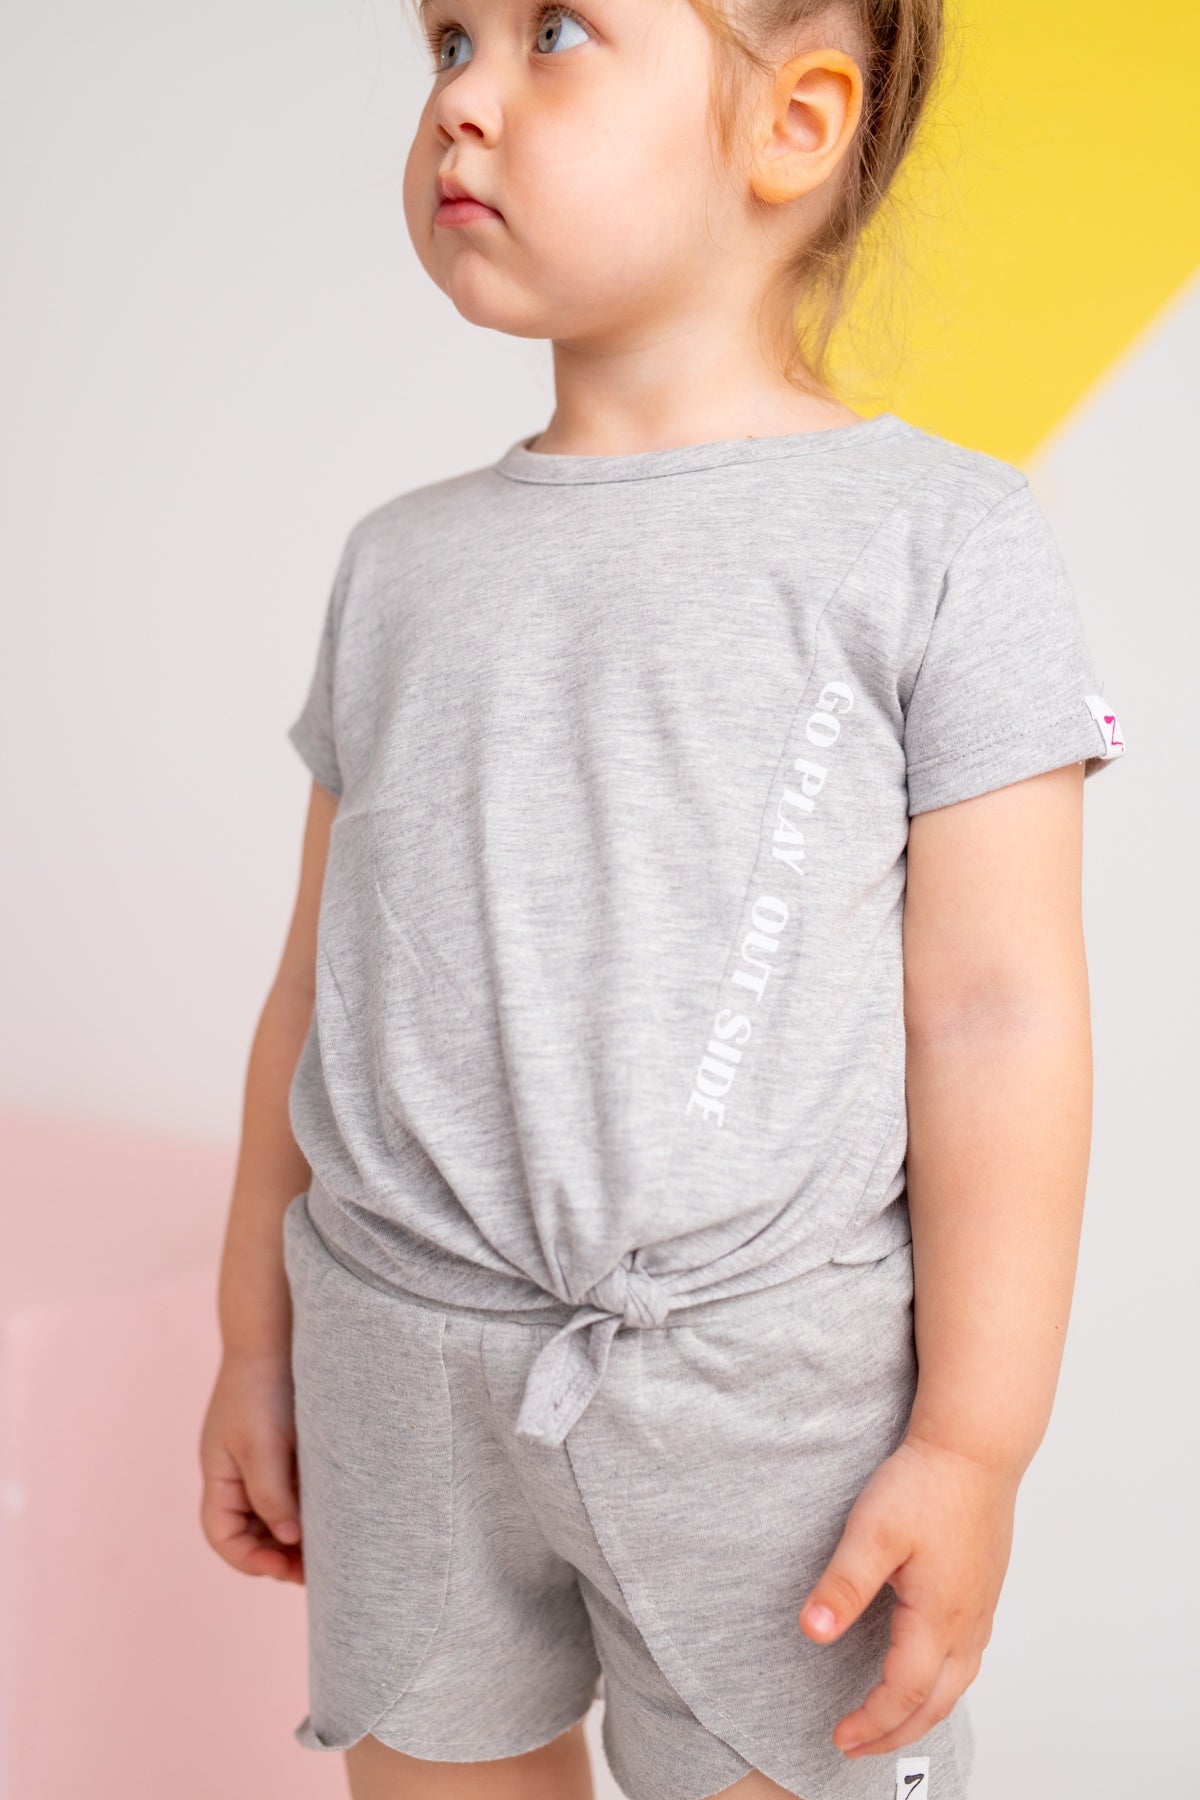 Kız Bebek Gri Bağlamalı Crop T-Shirt (9ay-4yaş)-1